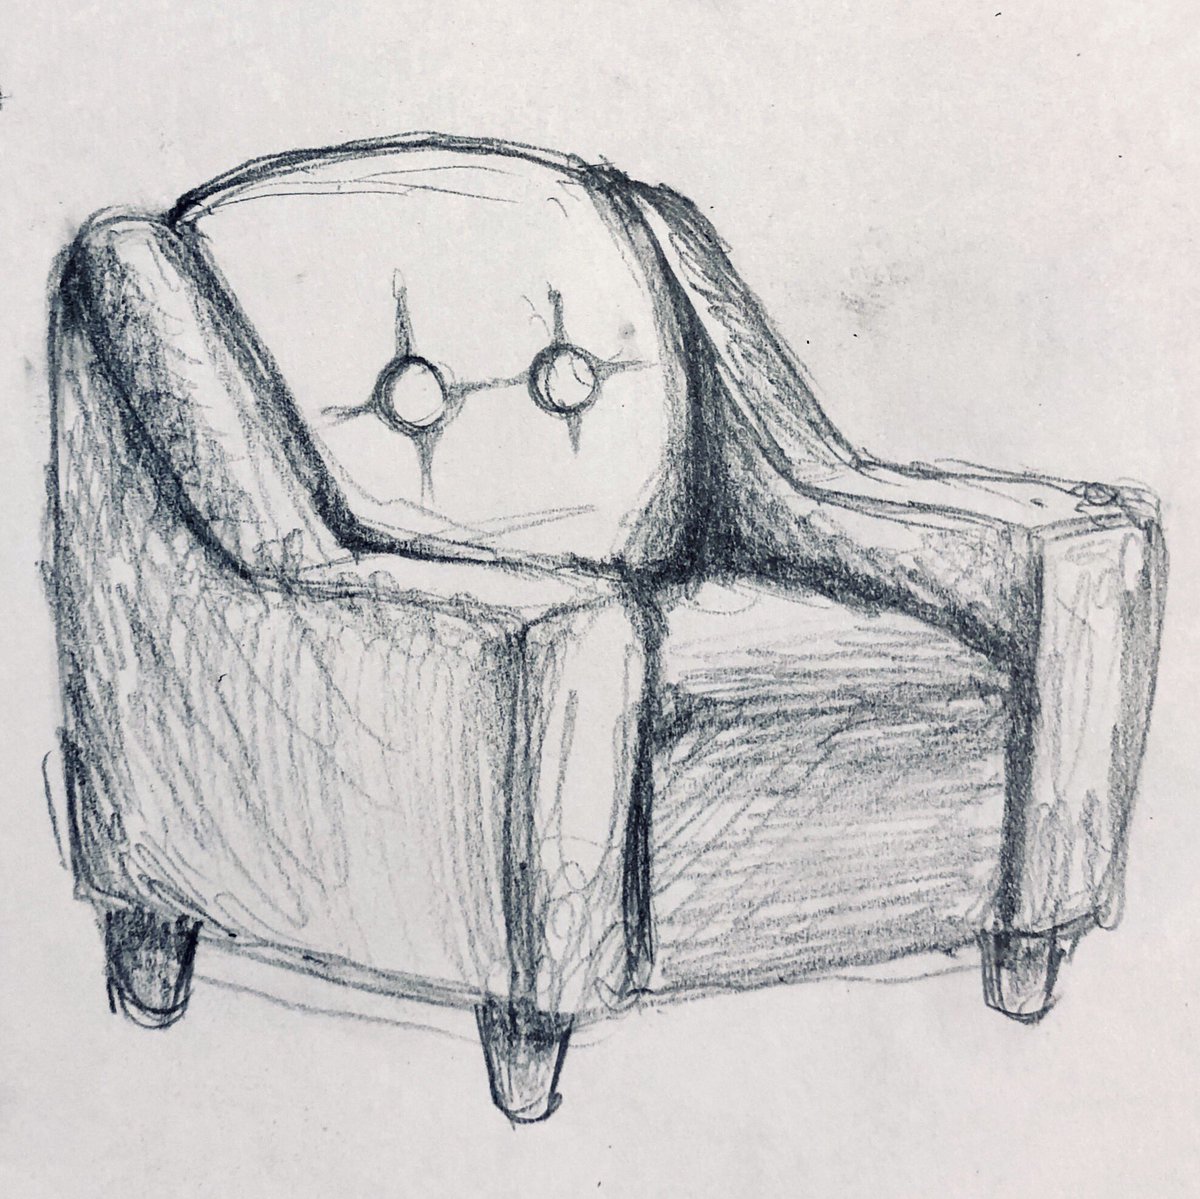 吉田すだち No Twitter おはようございます 少女と椅子がでてくる絵を描きたくて 椅子のラフスケッチを何枚かしてみました いろんな椅子 ソファ があるな 椅子描くの楽しい どれが好きですか イラスト好きな人と繋がりたい 絵描きさんと繫がりたい